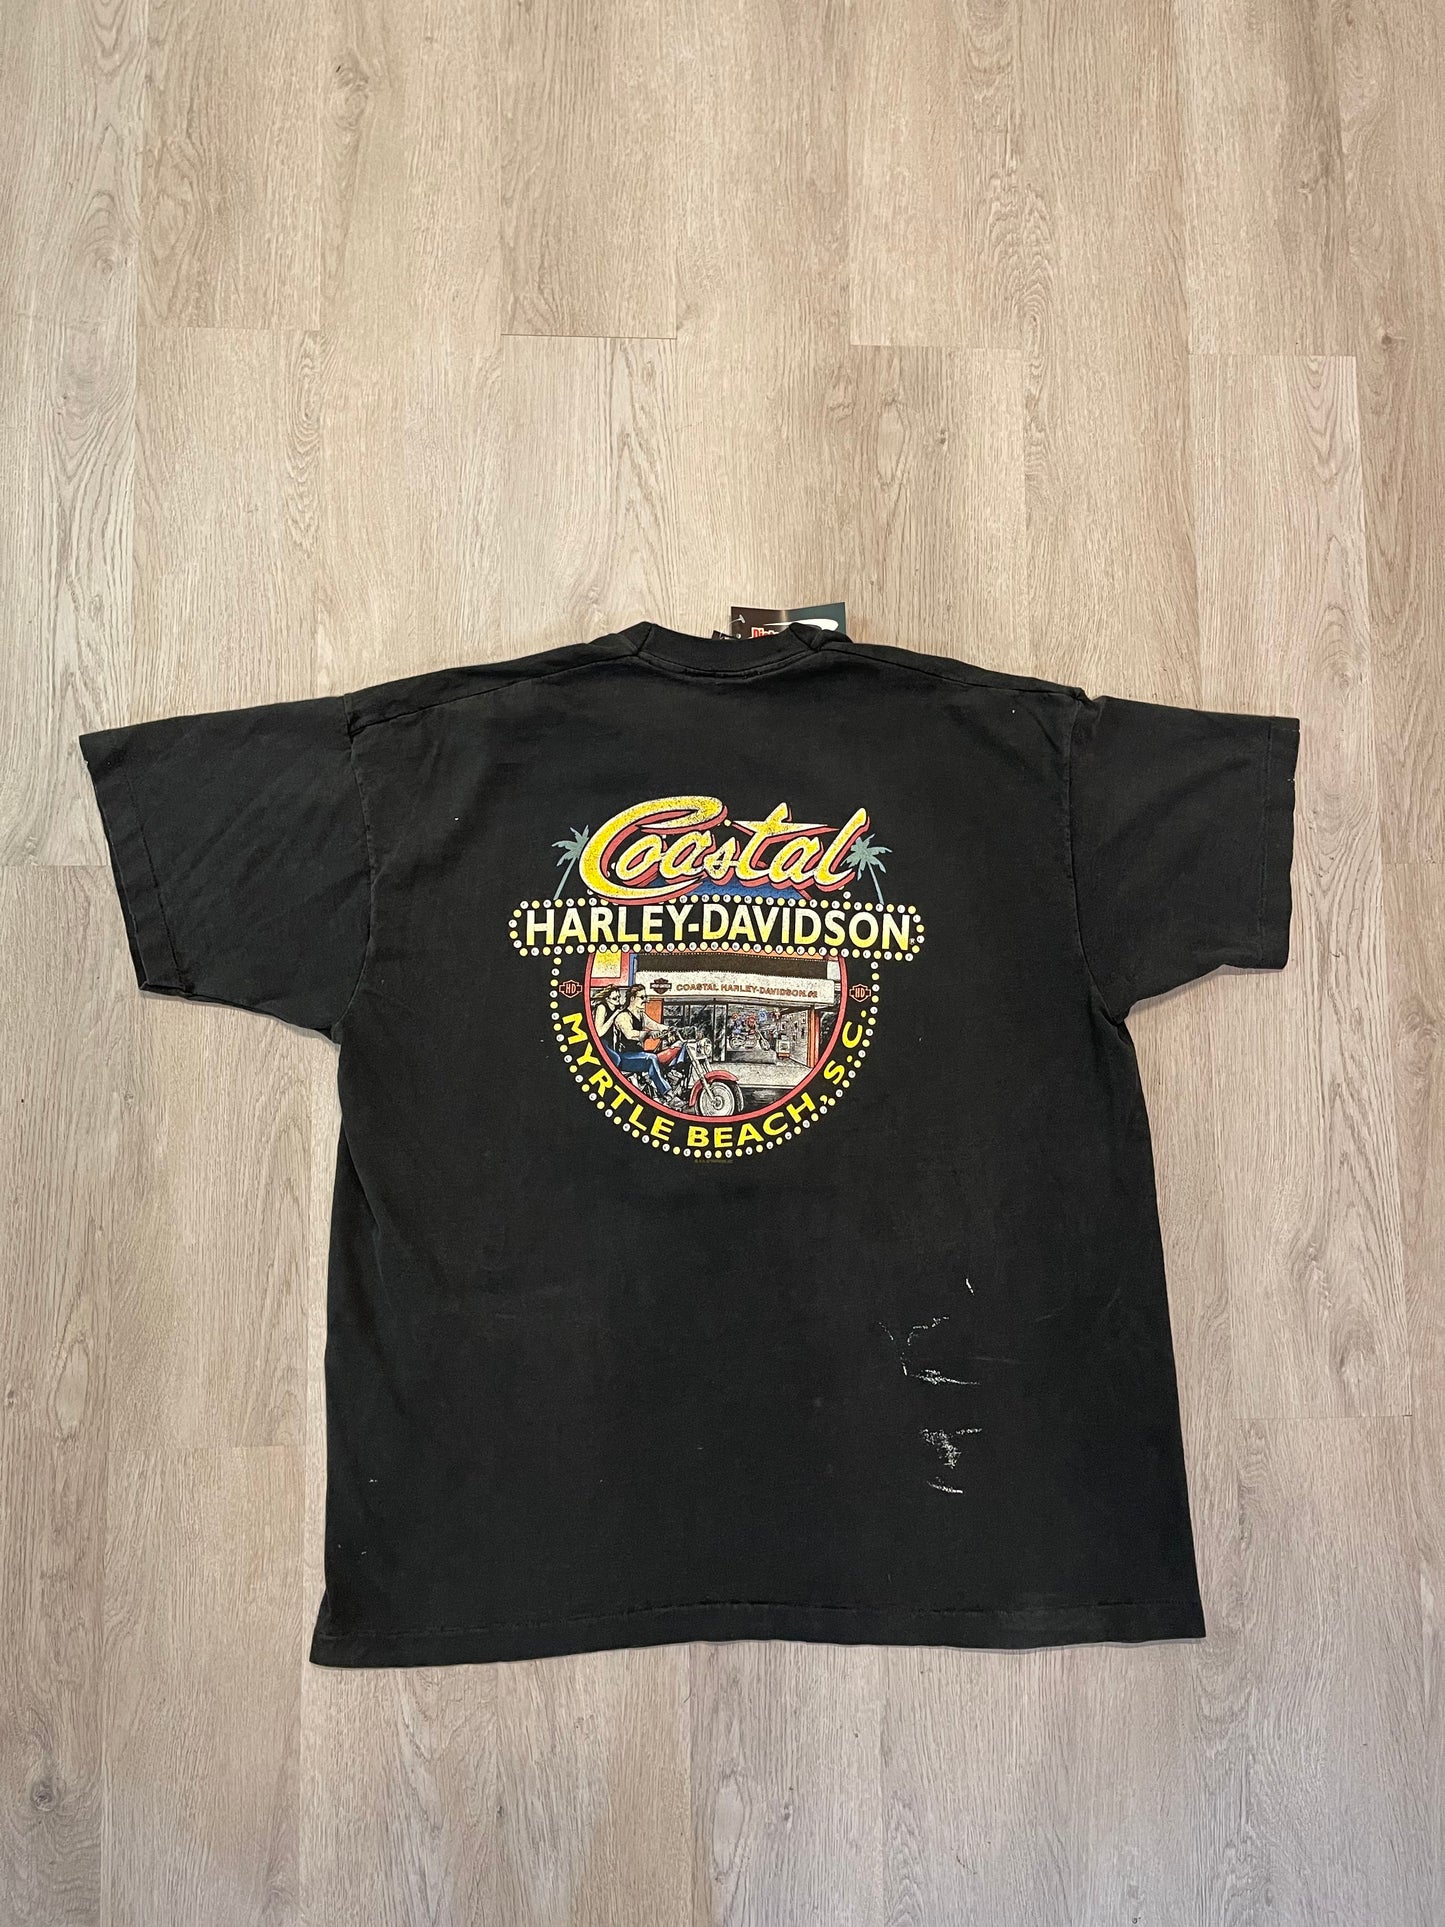 Harley Davidson V-Twin Myrtle Beach Vintage T-Shirt